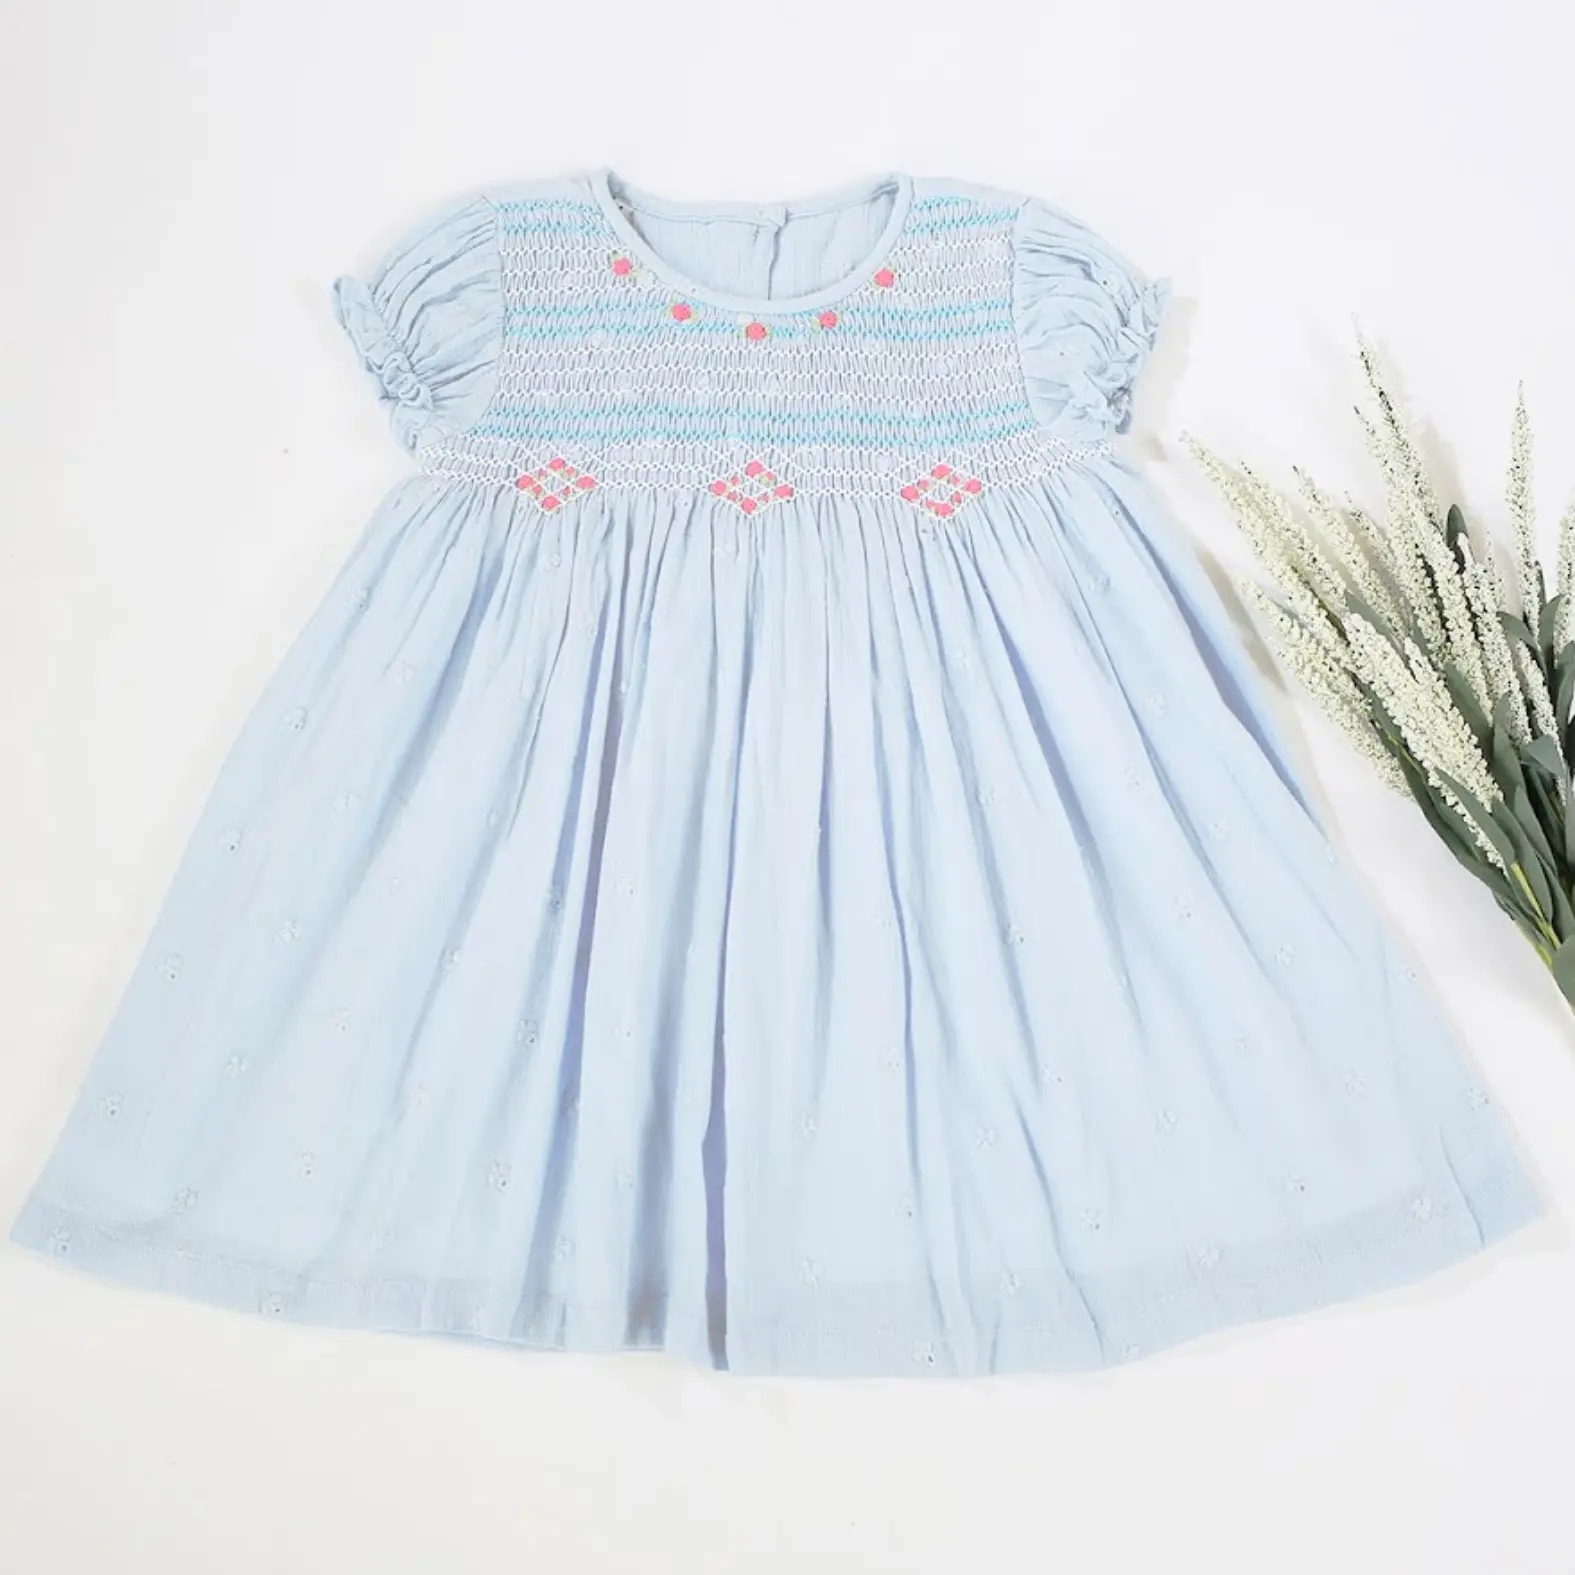 Children's Clothing Girl's Clothing Girls Dresses Wholesale Girl Smocked Dress For Kids 1-8 years Blue Short 100% Cotton